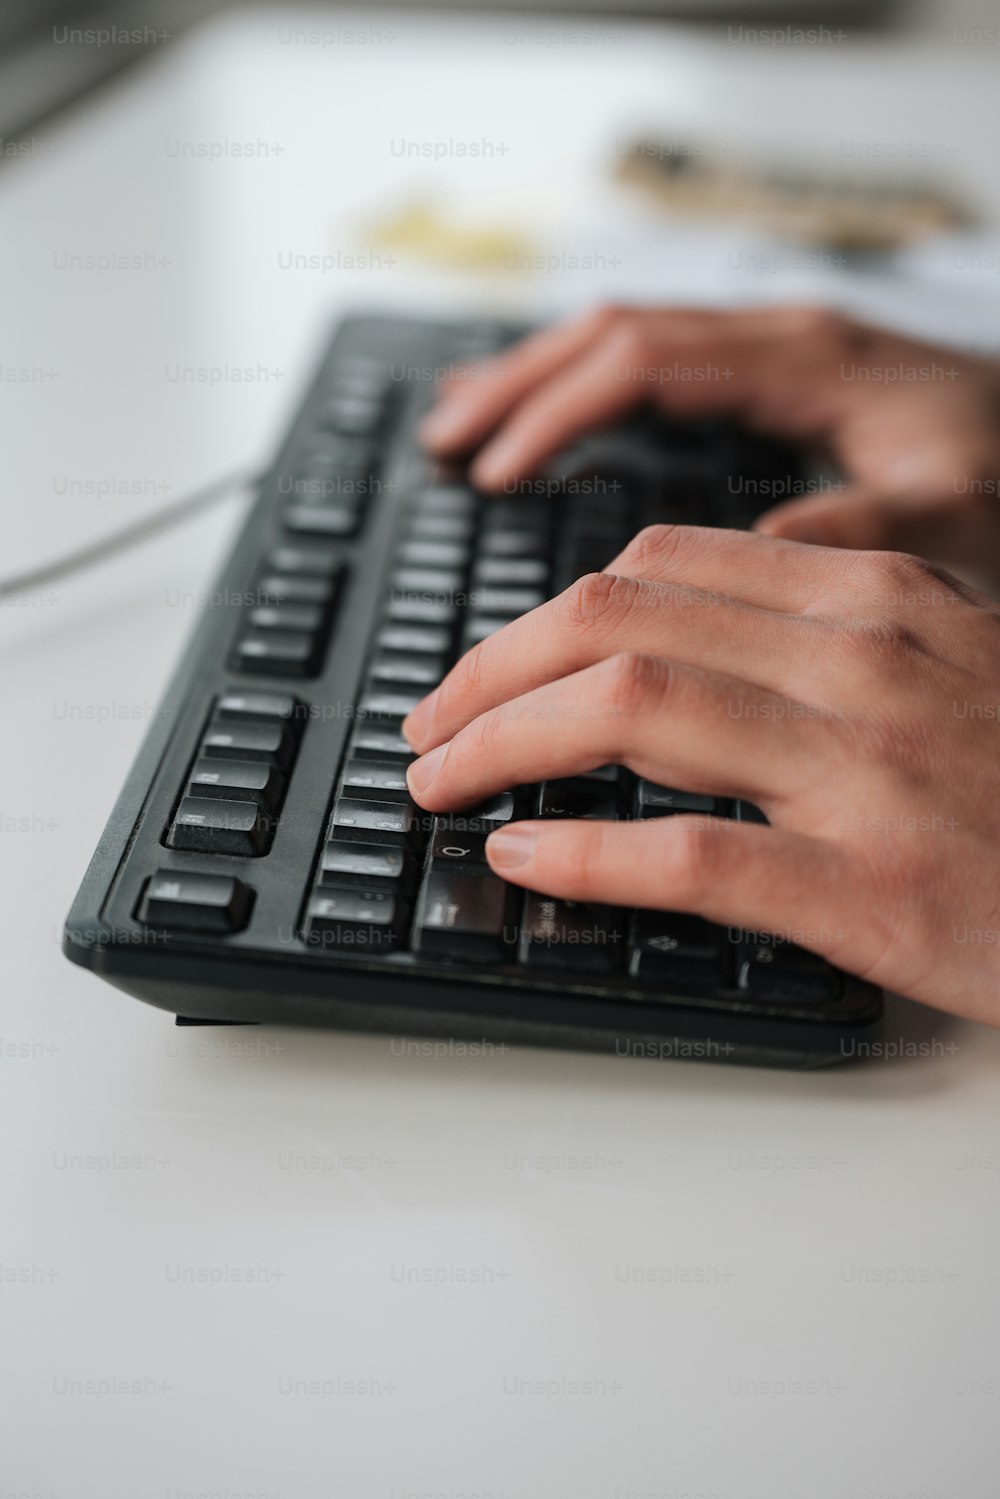 Una persona che digita su una tastiera